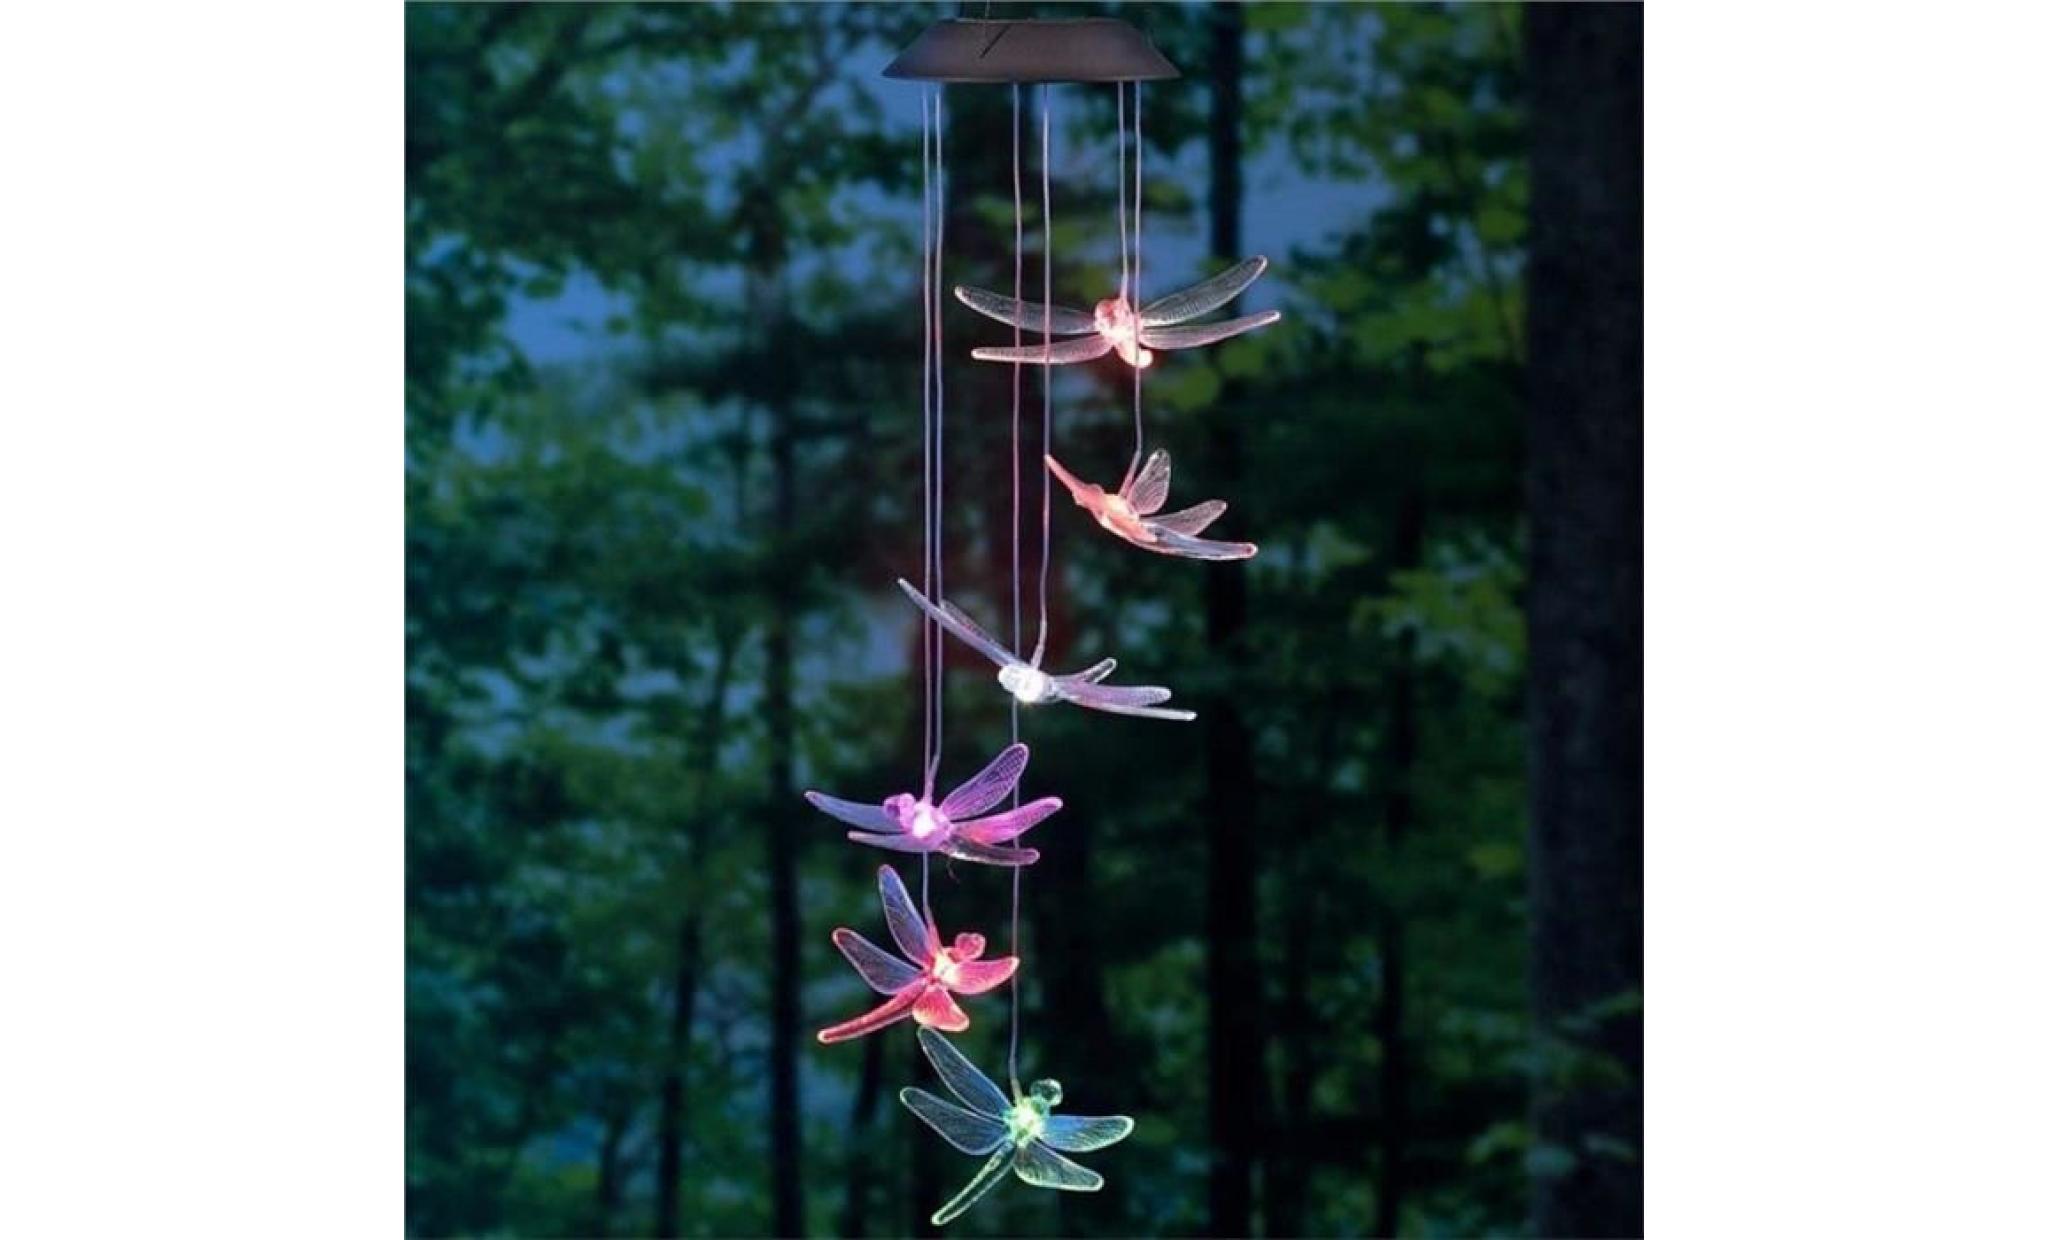 solaire mobile led lumière couleur changement de carillons À vent libellule pendentif aeolian bell cour jardin carillons À vent